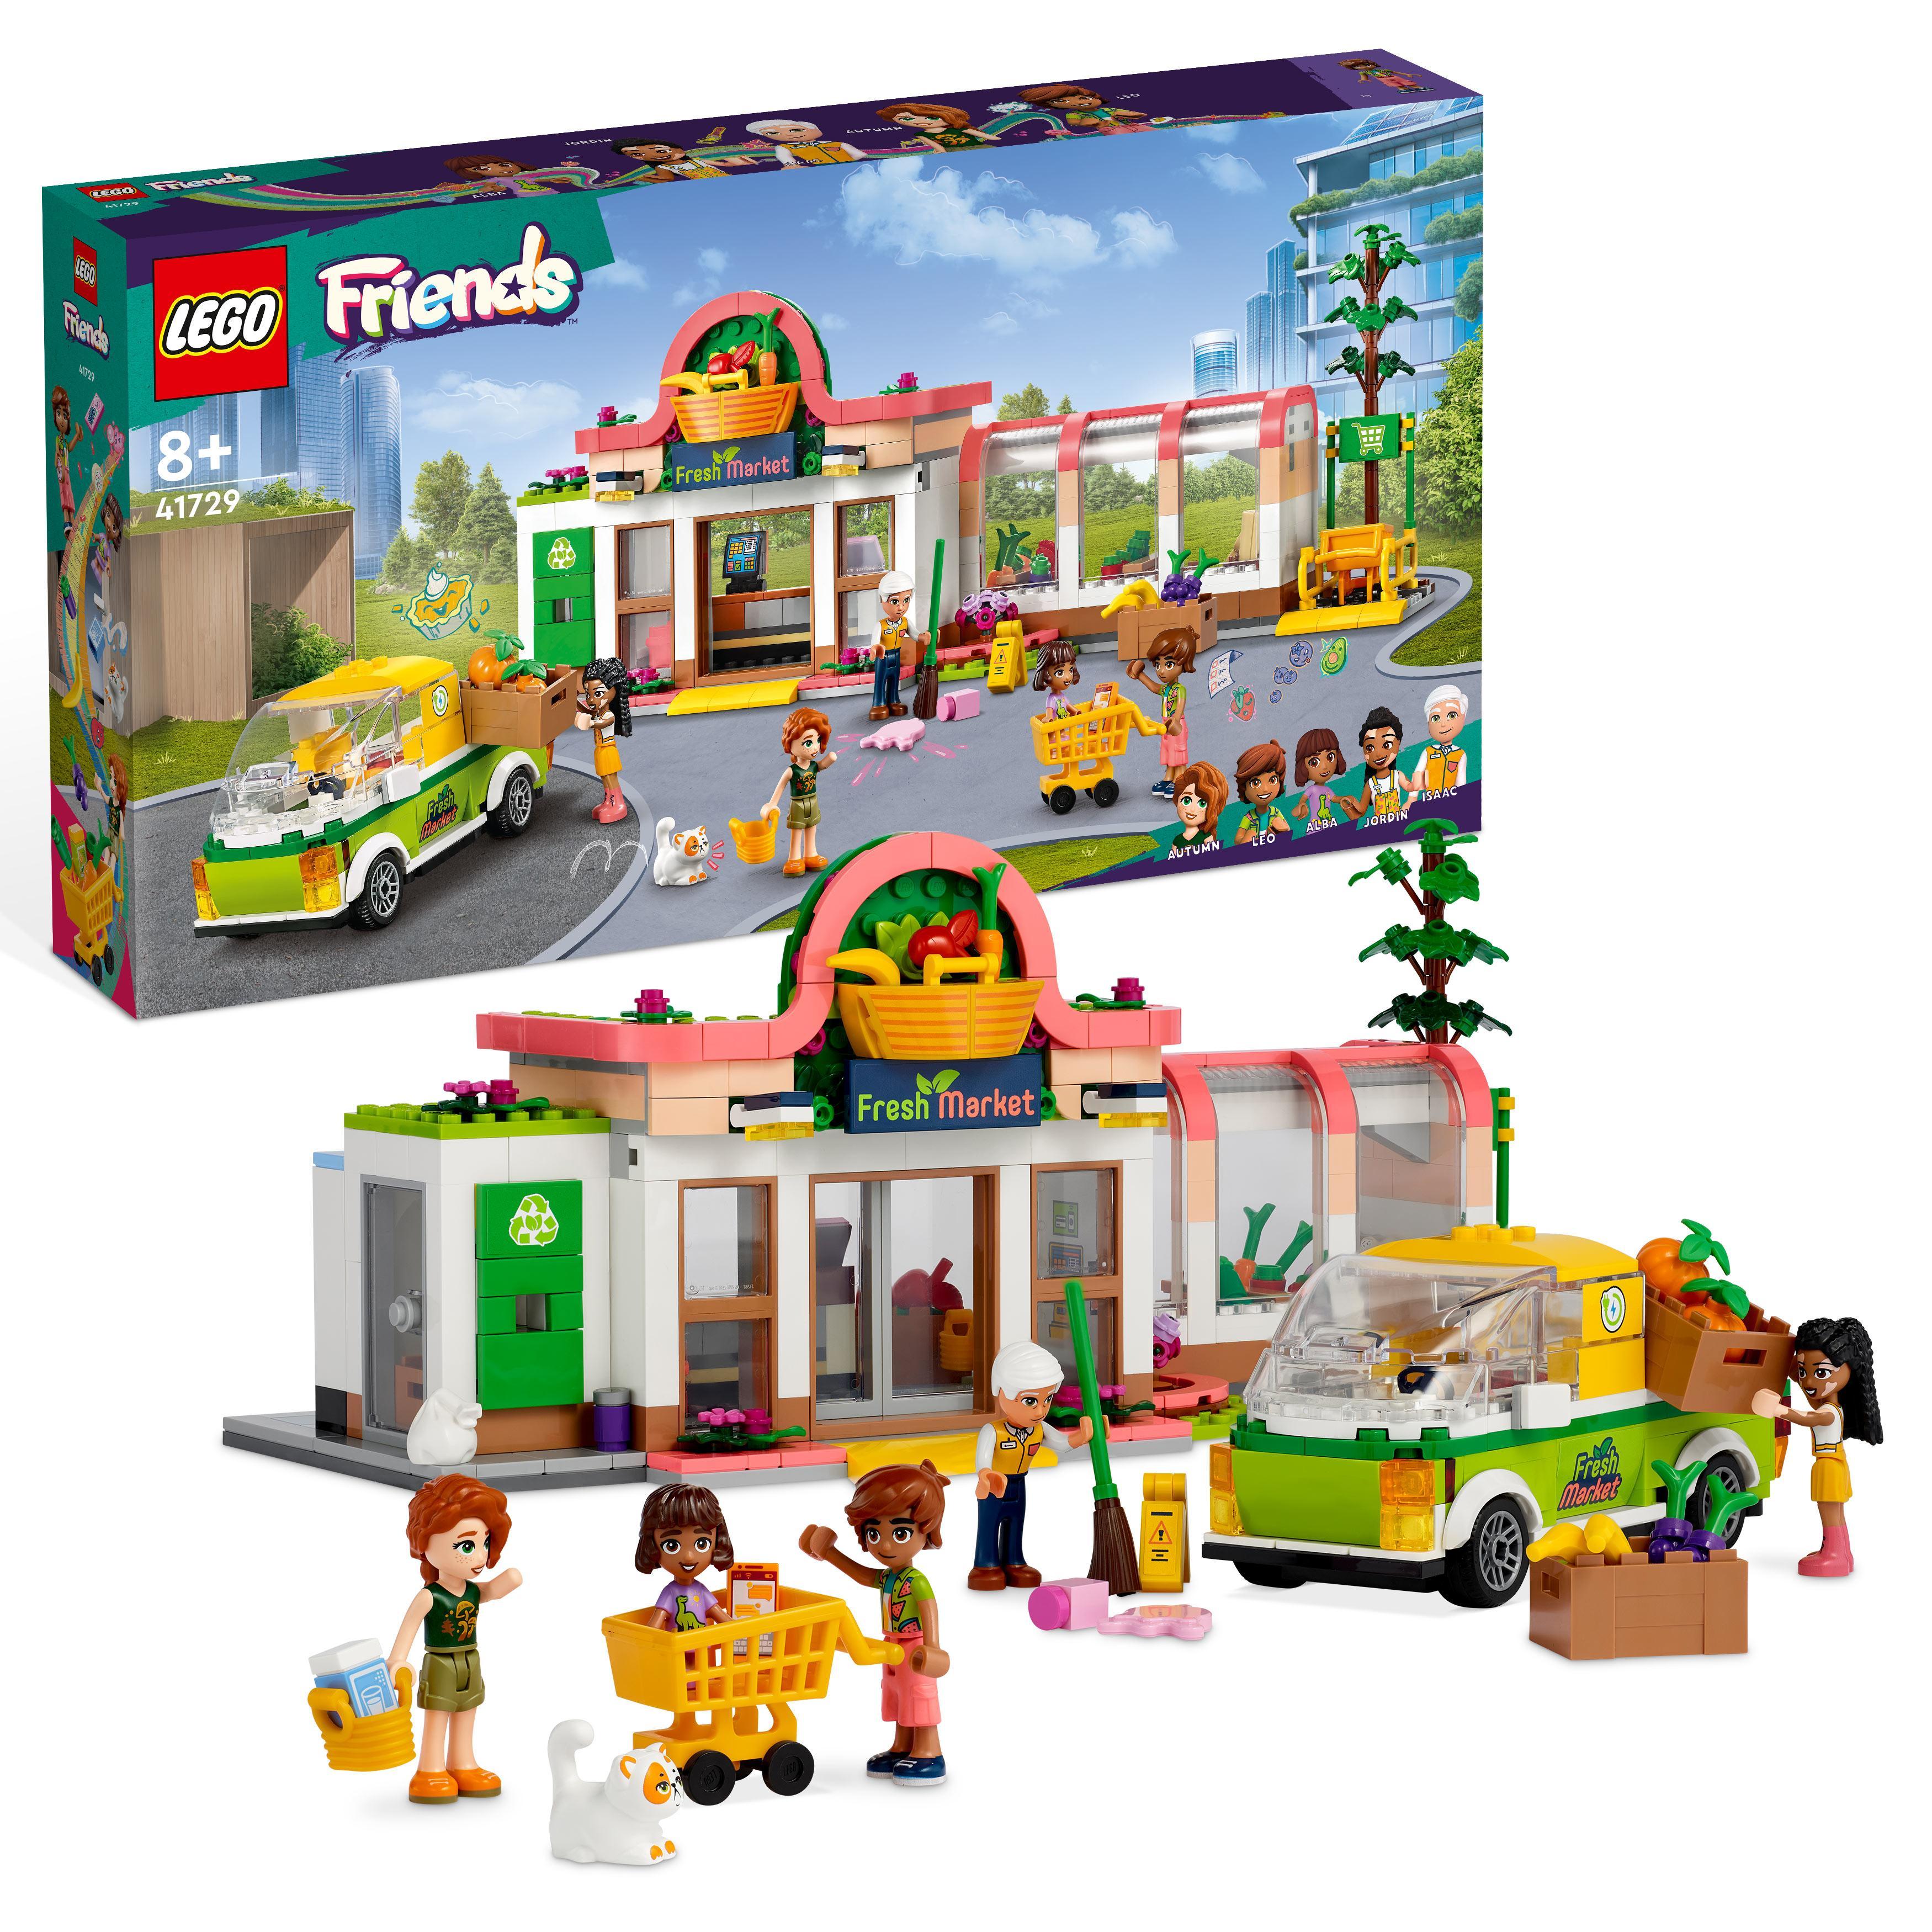 LEGO Friends -Økologisk matbutikk (41729)